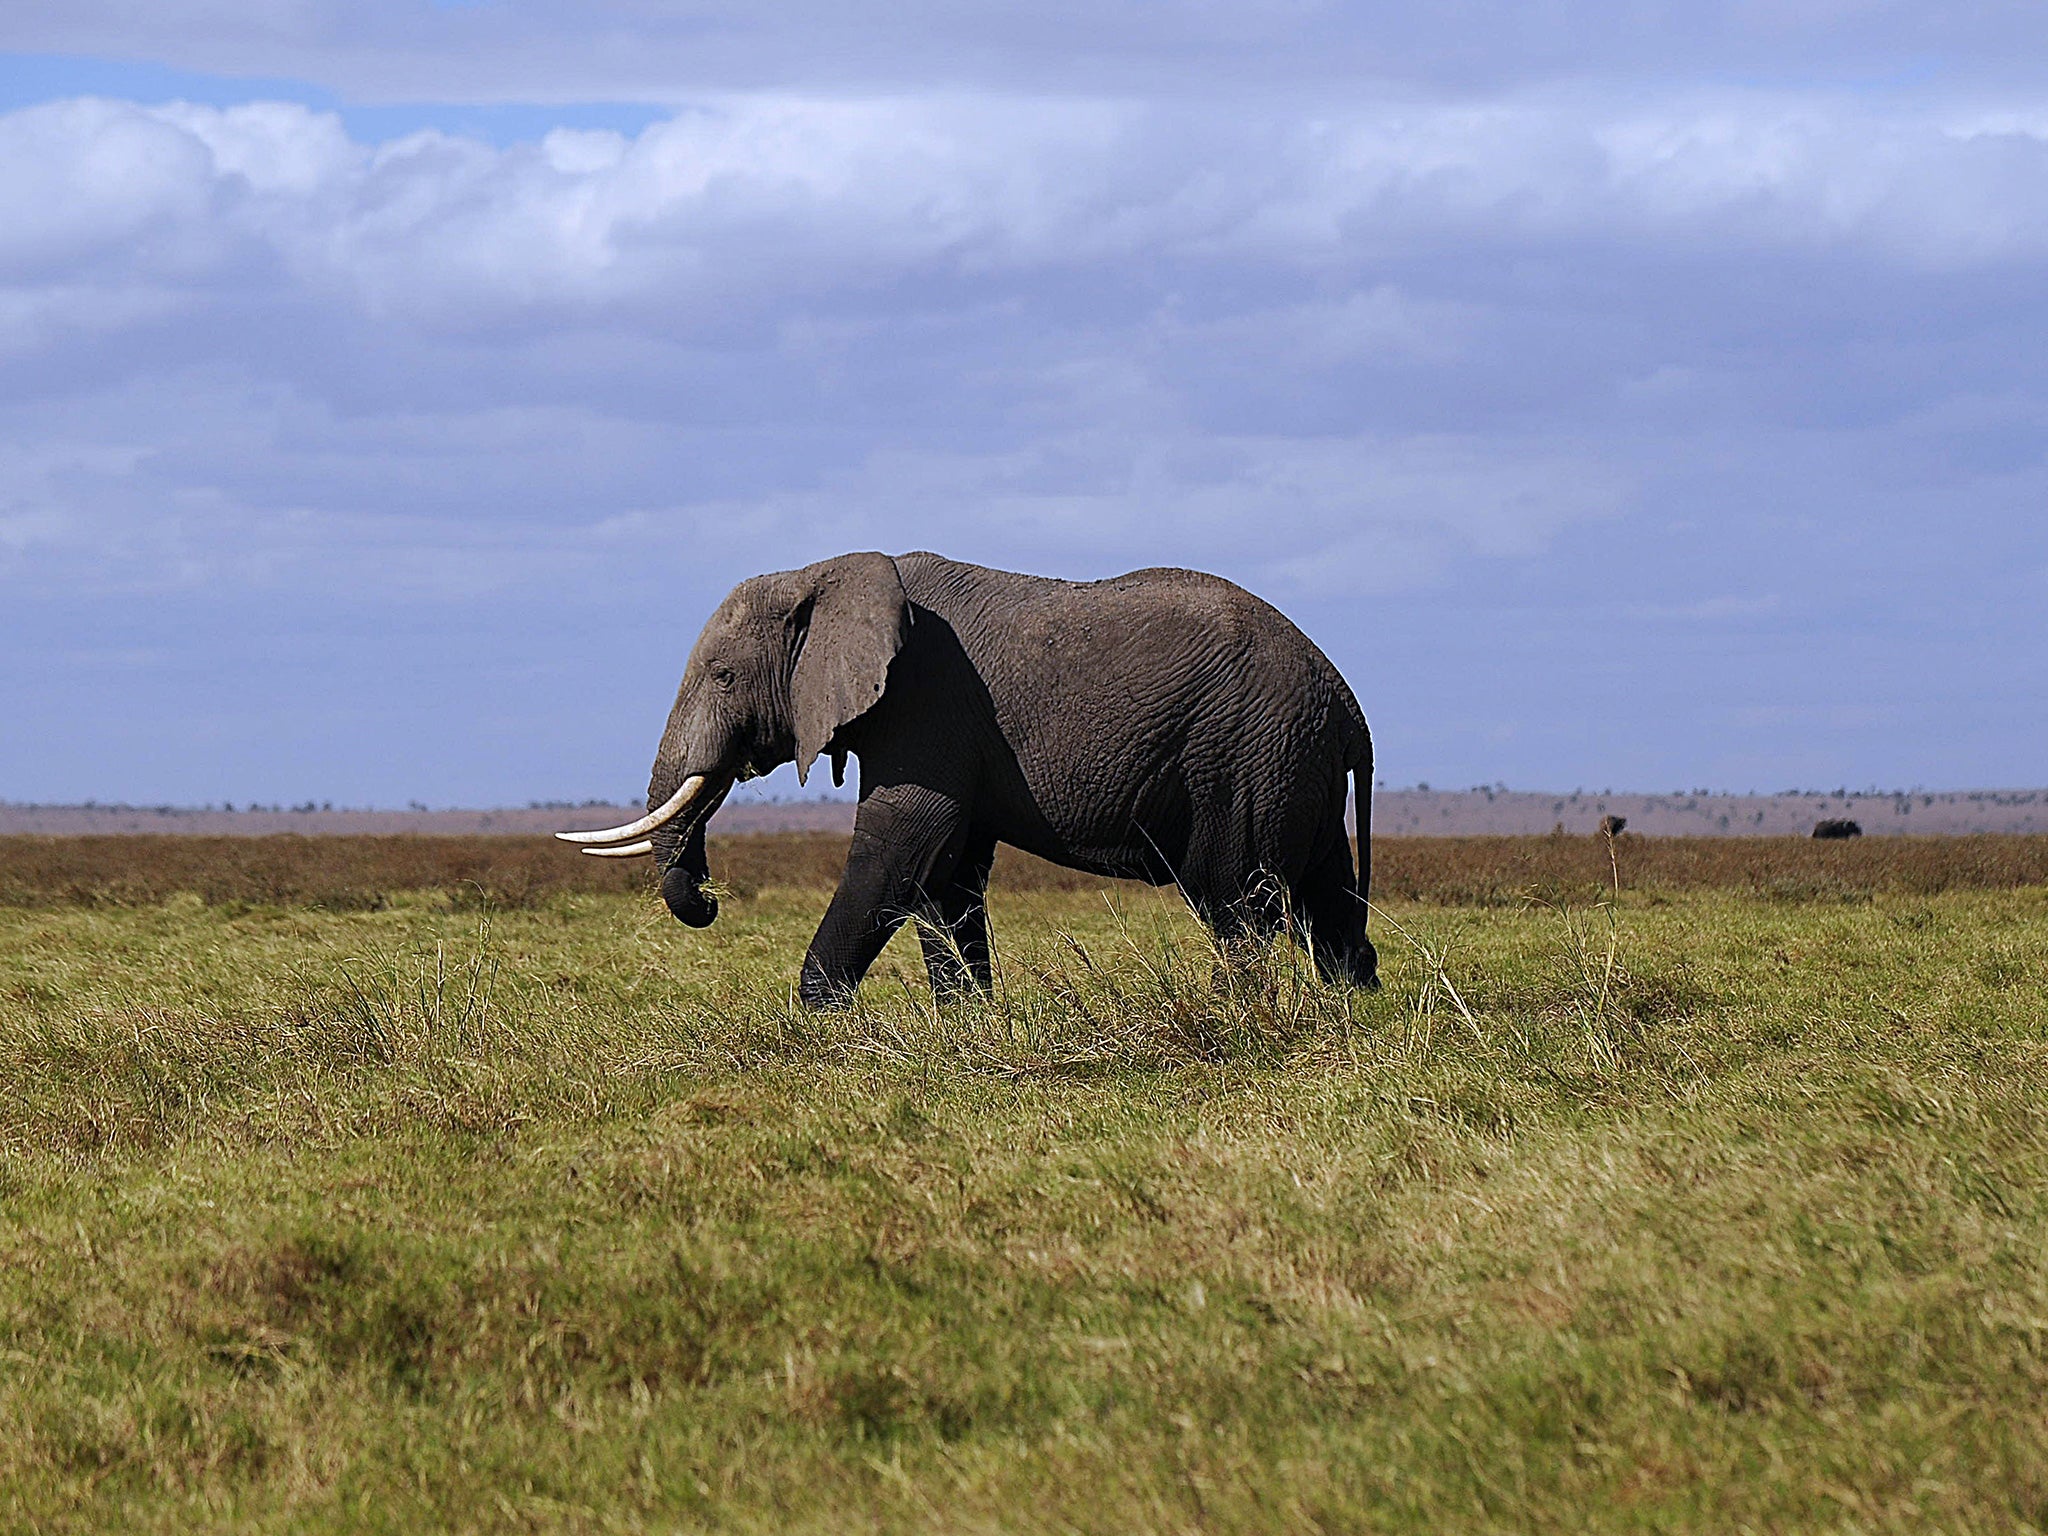 An enormous elephant